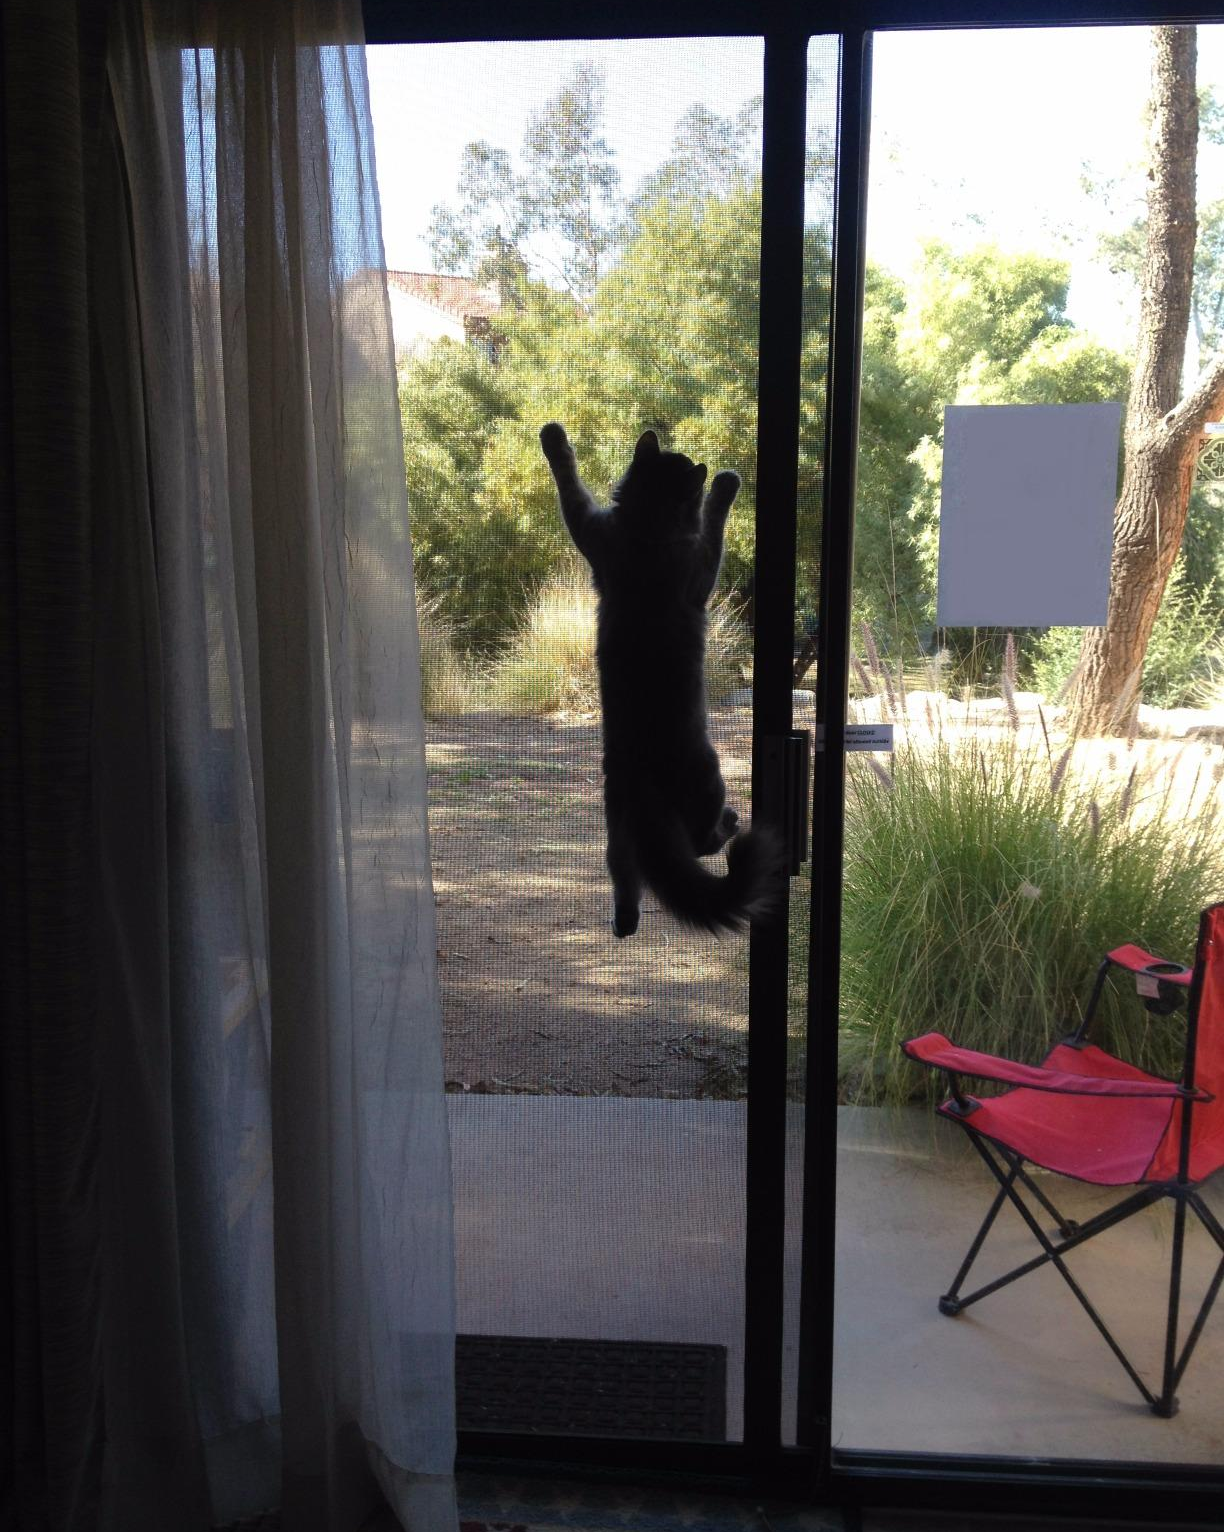 reviewer's cat hanging on the door screen